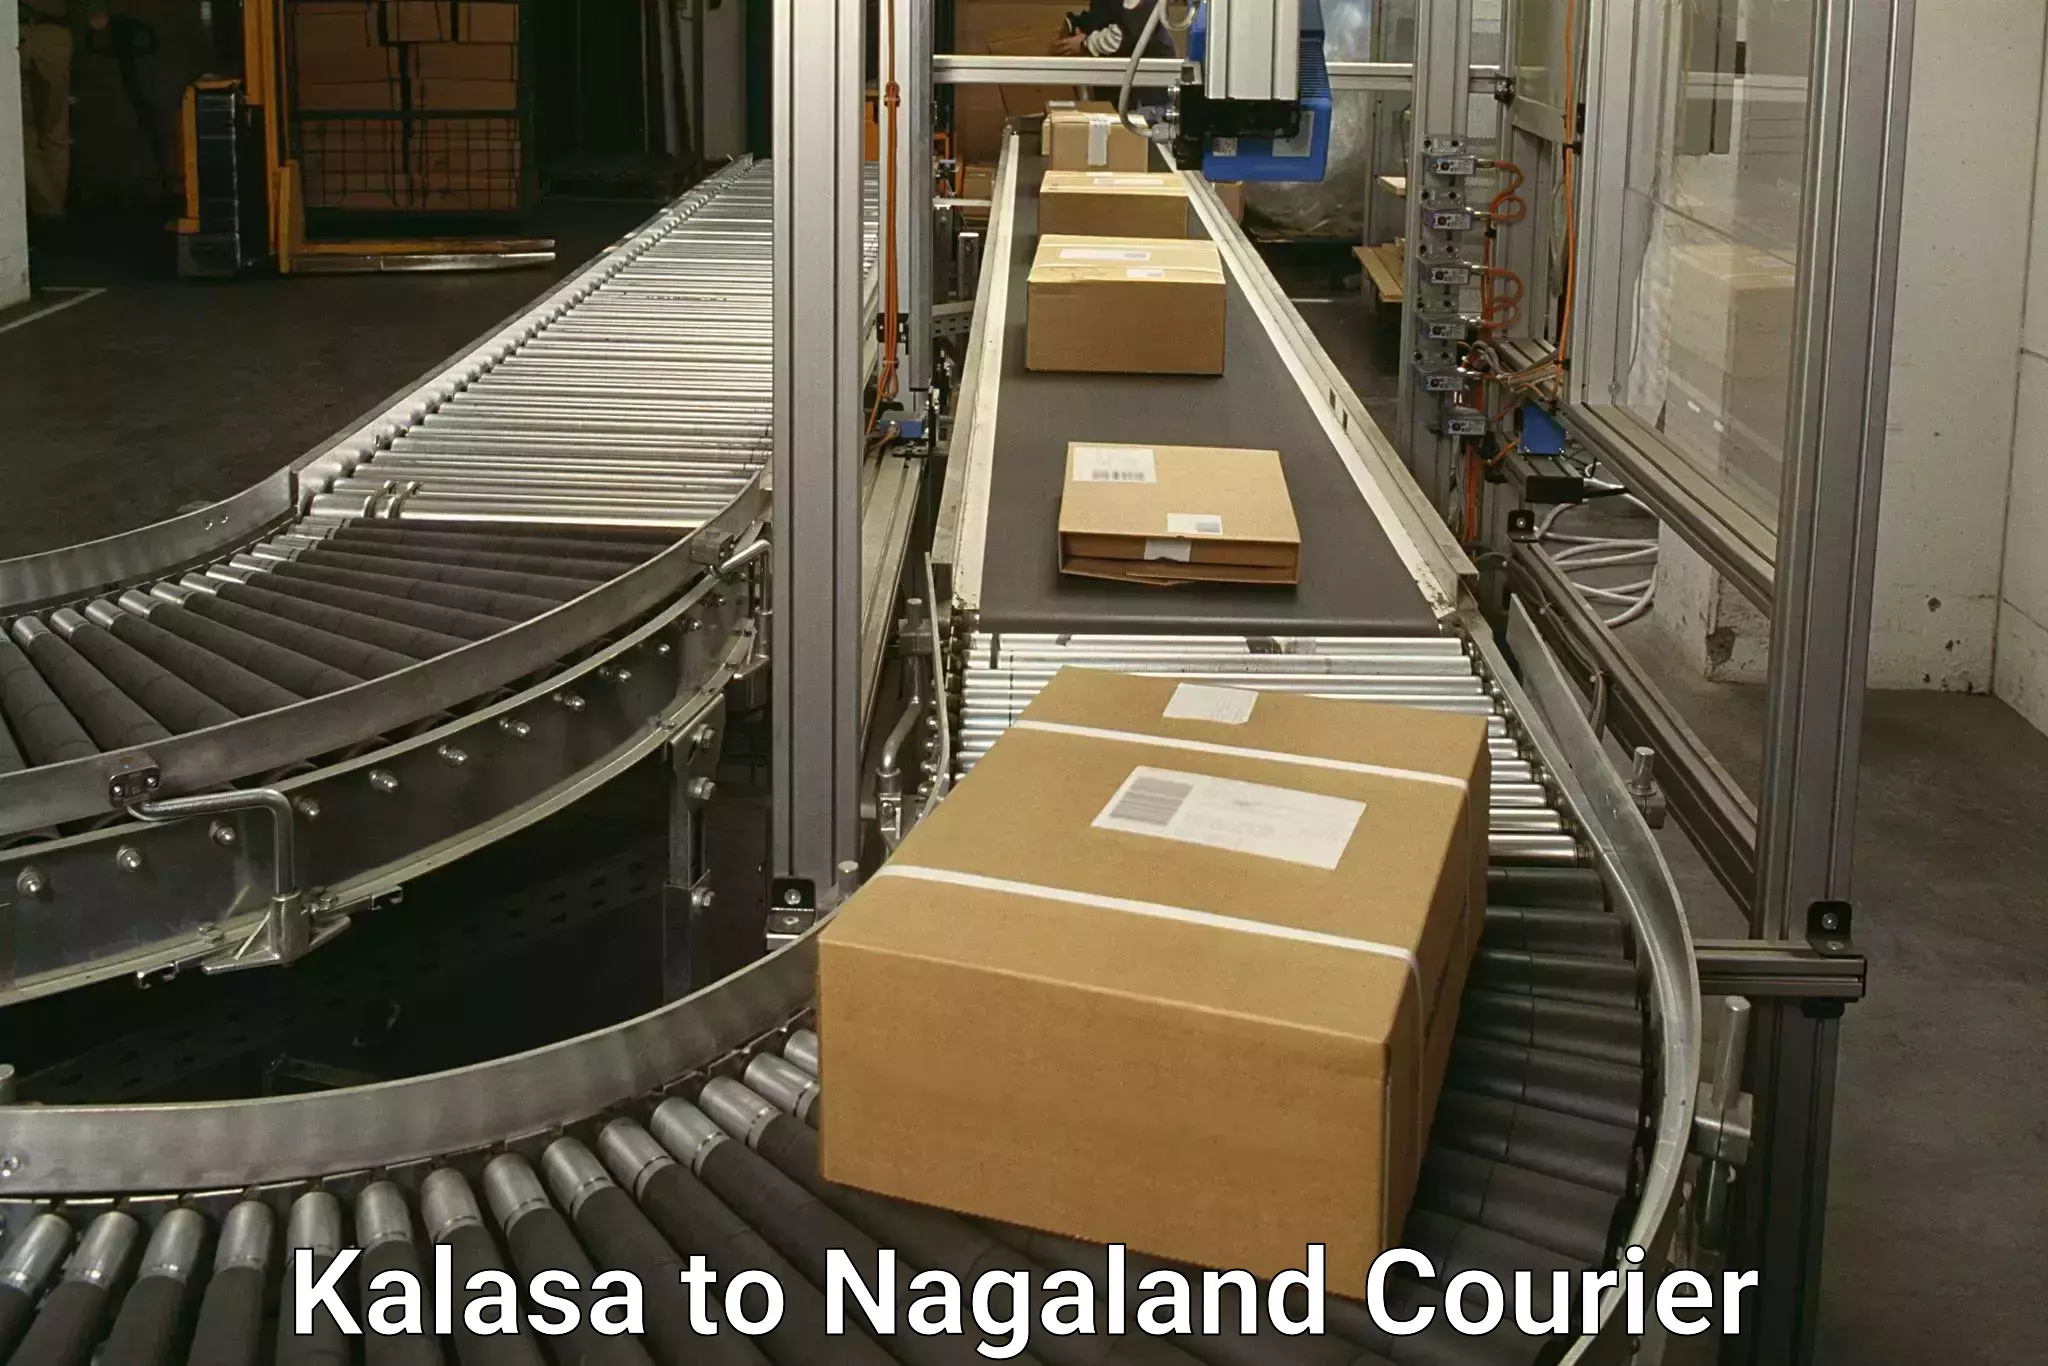 24/7 shipping services Kalasa to Nagaland